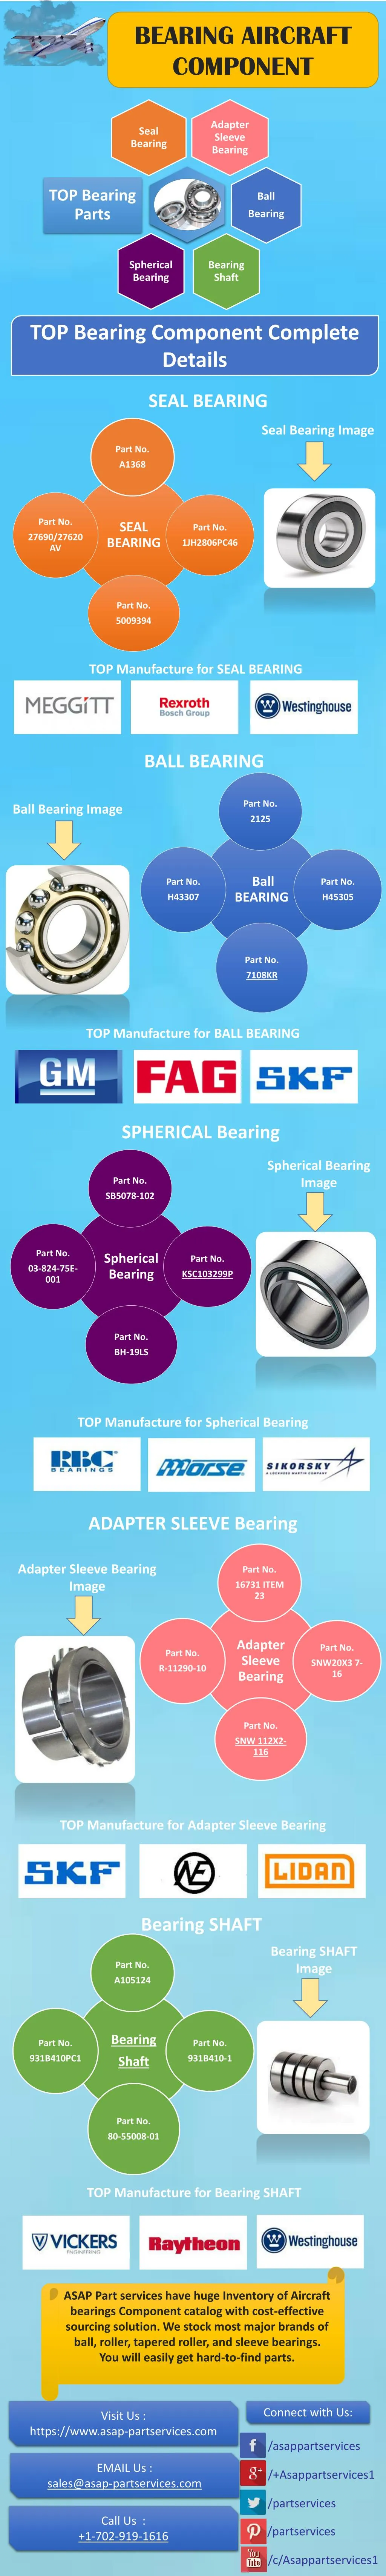 bearing aircraft component